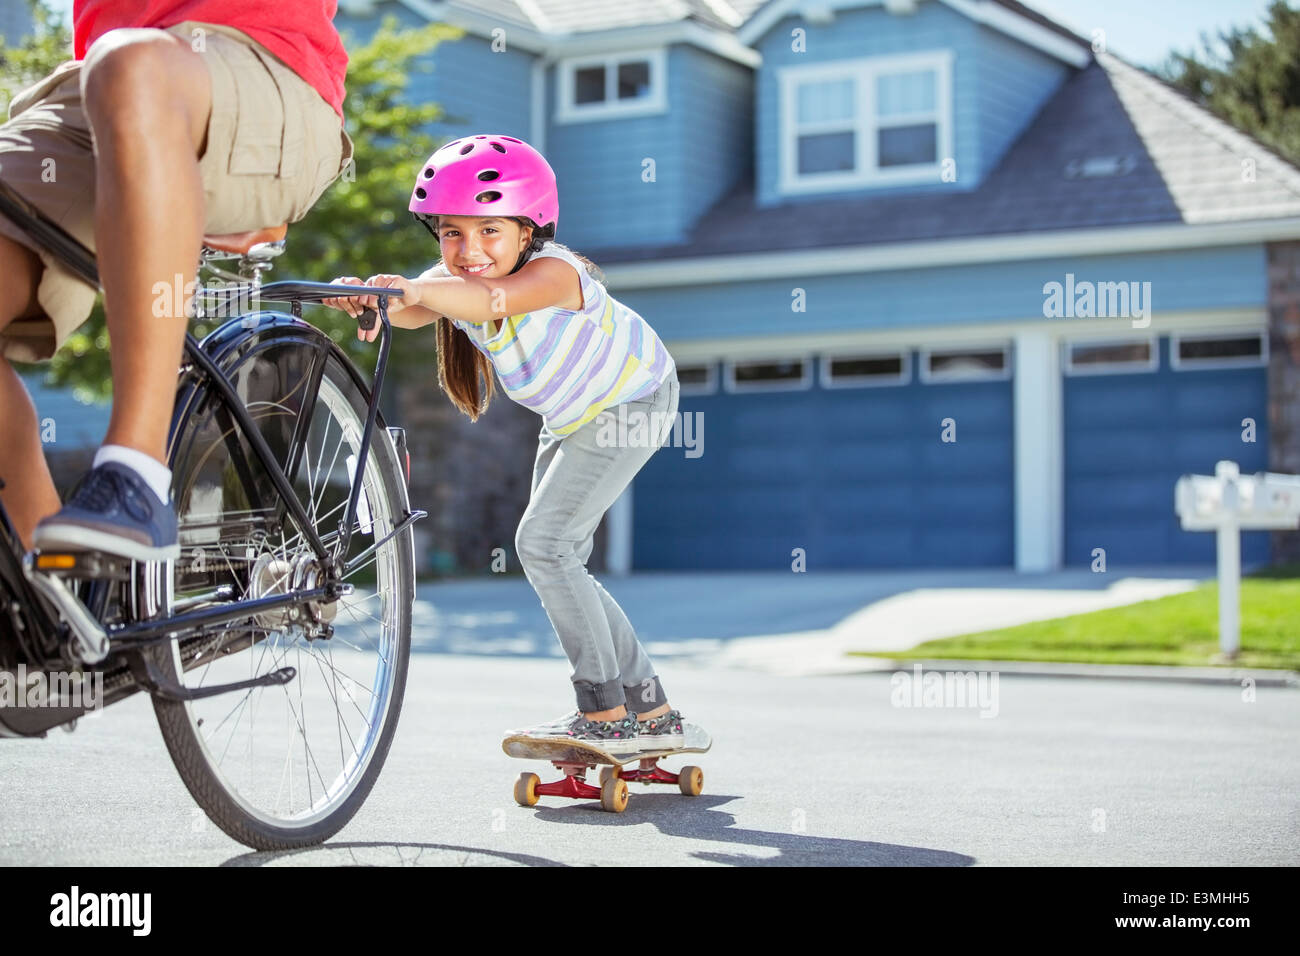 Vater mit dem Fahrrad ziehen Tochter auf skateboard Stockfoto